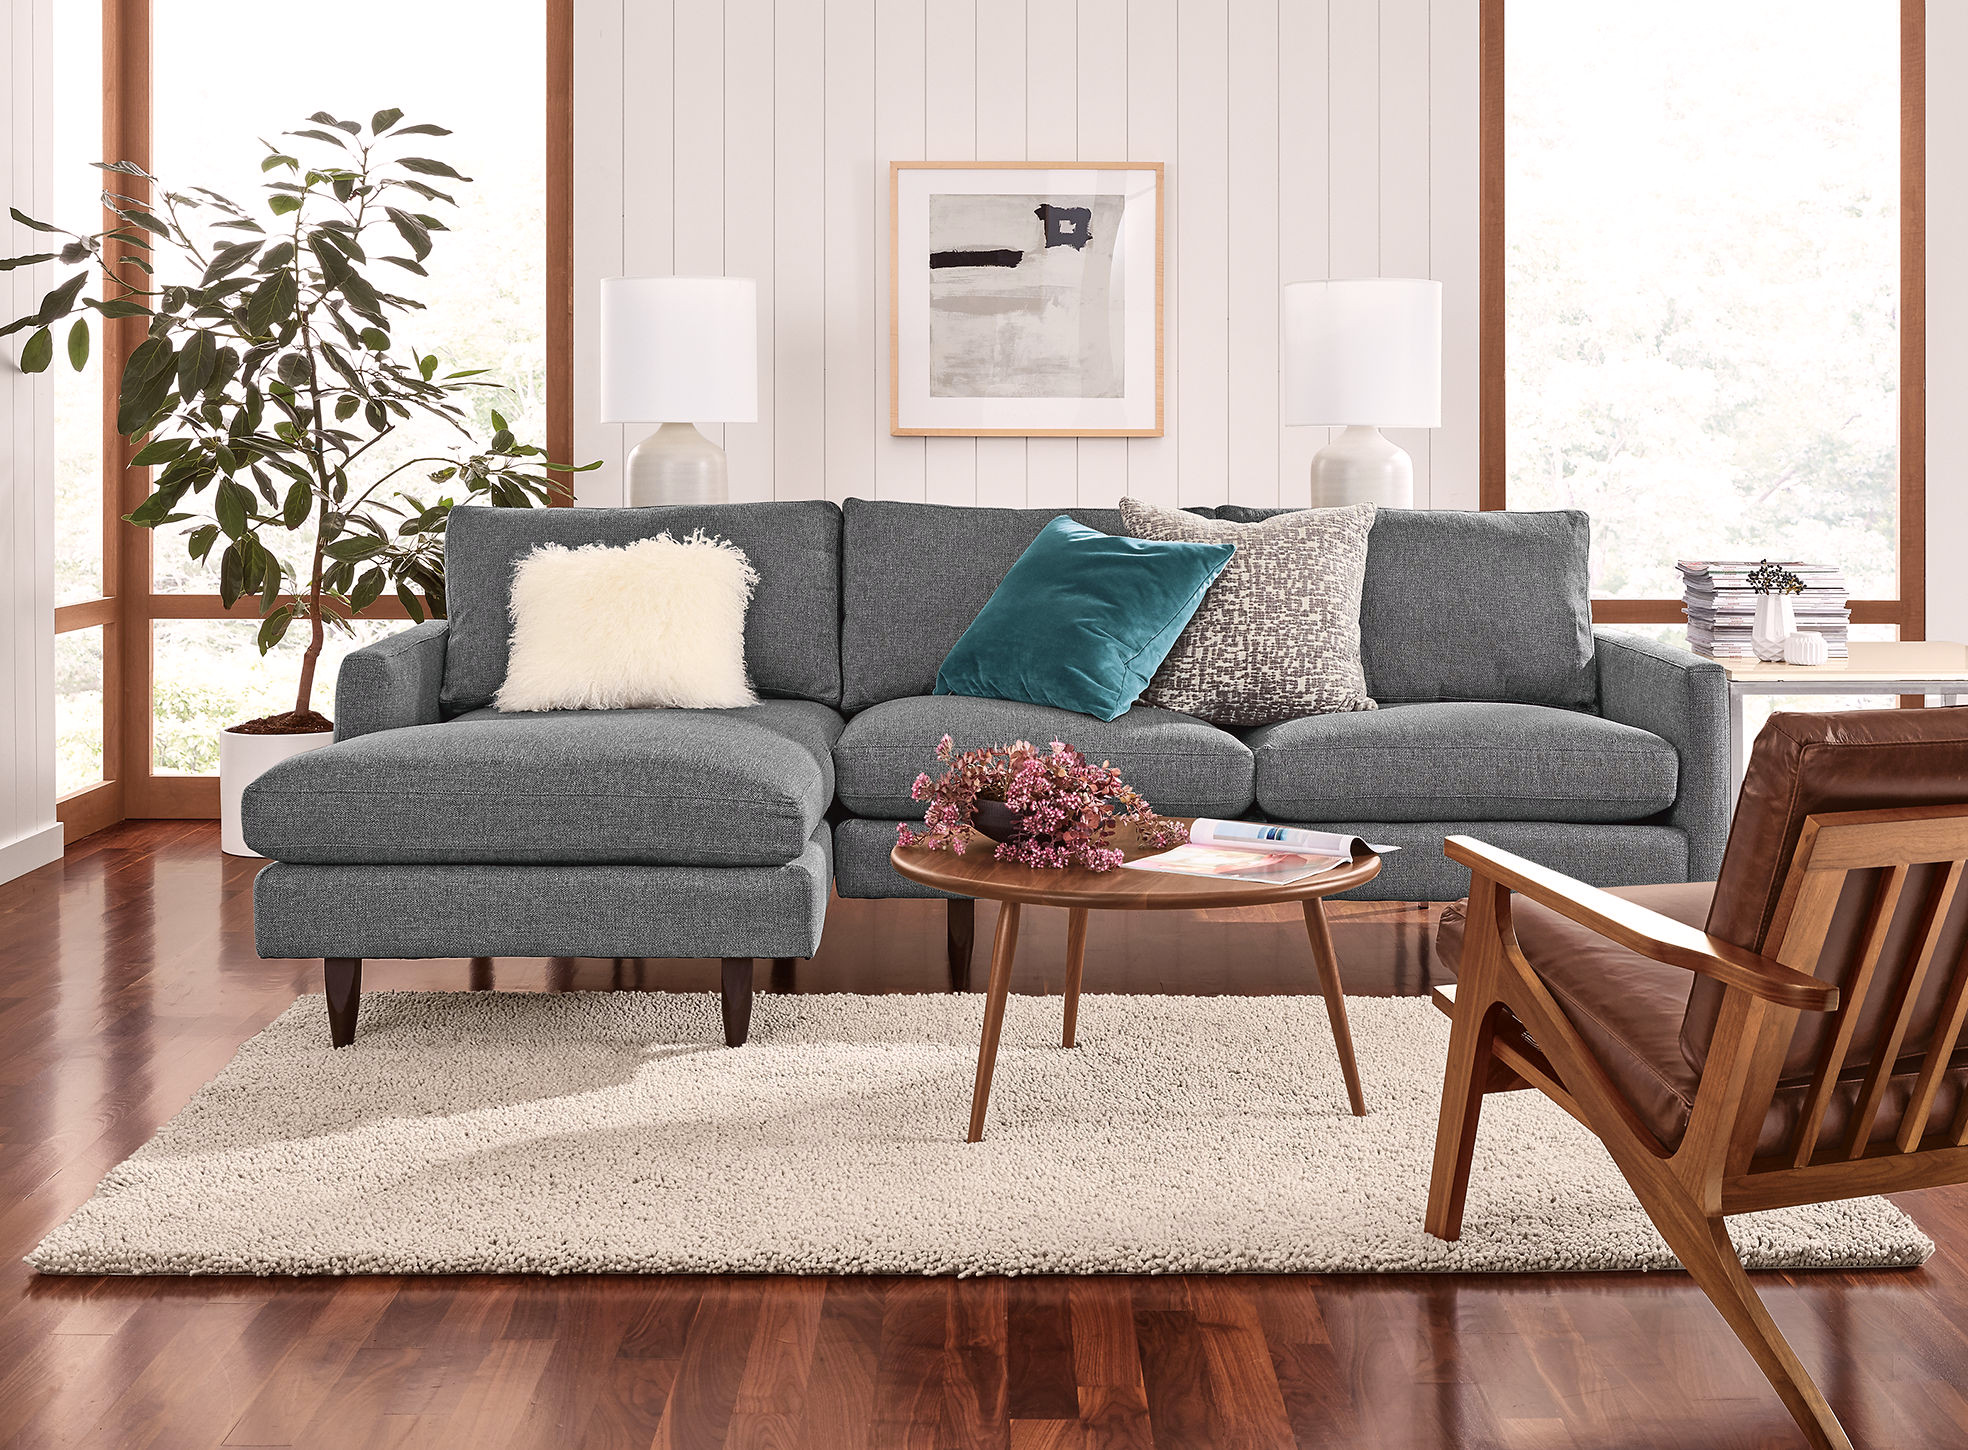 Simple mid-century living room model